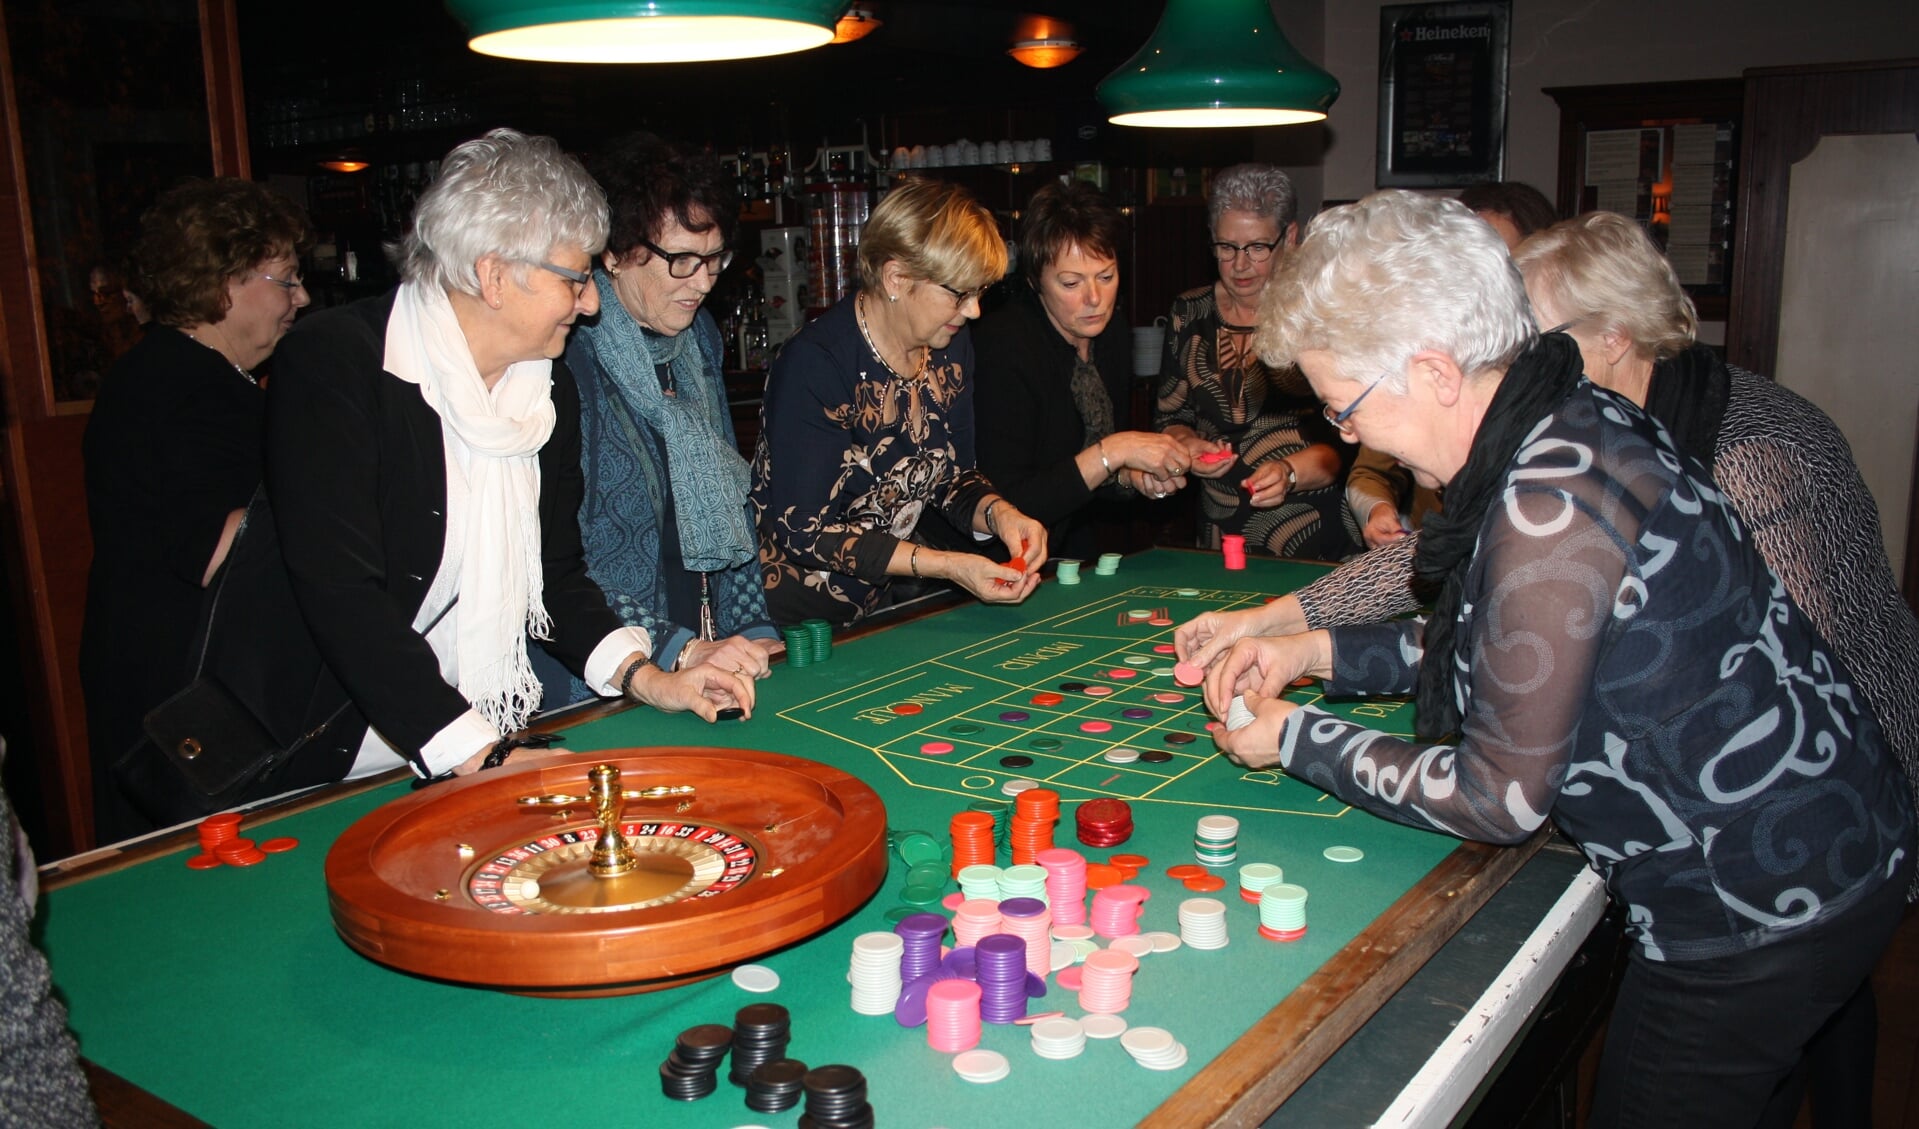 De dames van de Leeuwense Vrouwenvereniging speelden onder andere roulette.